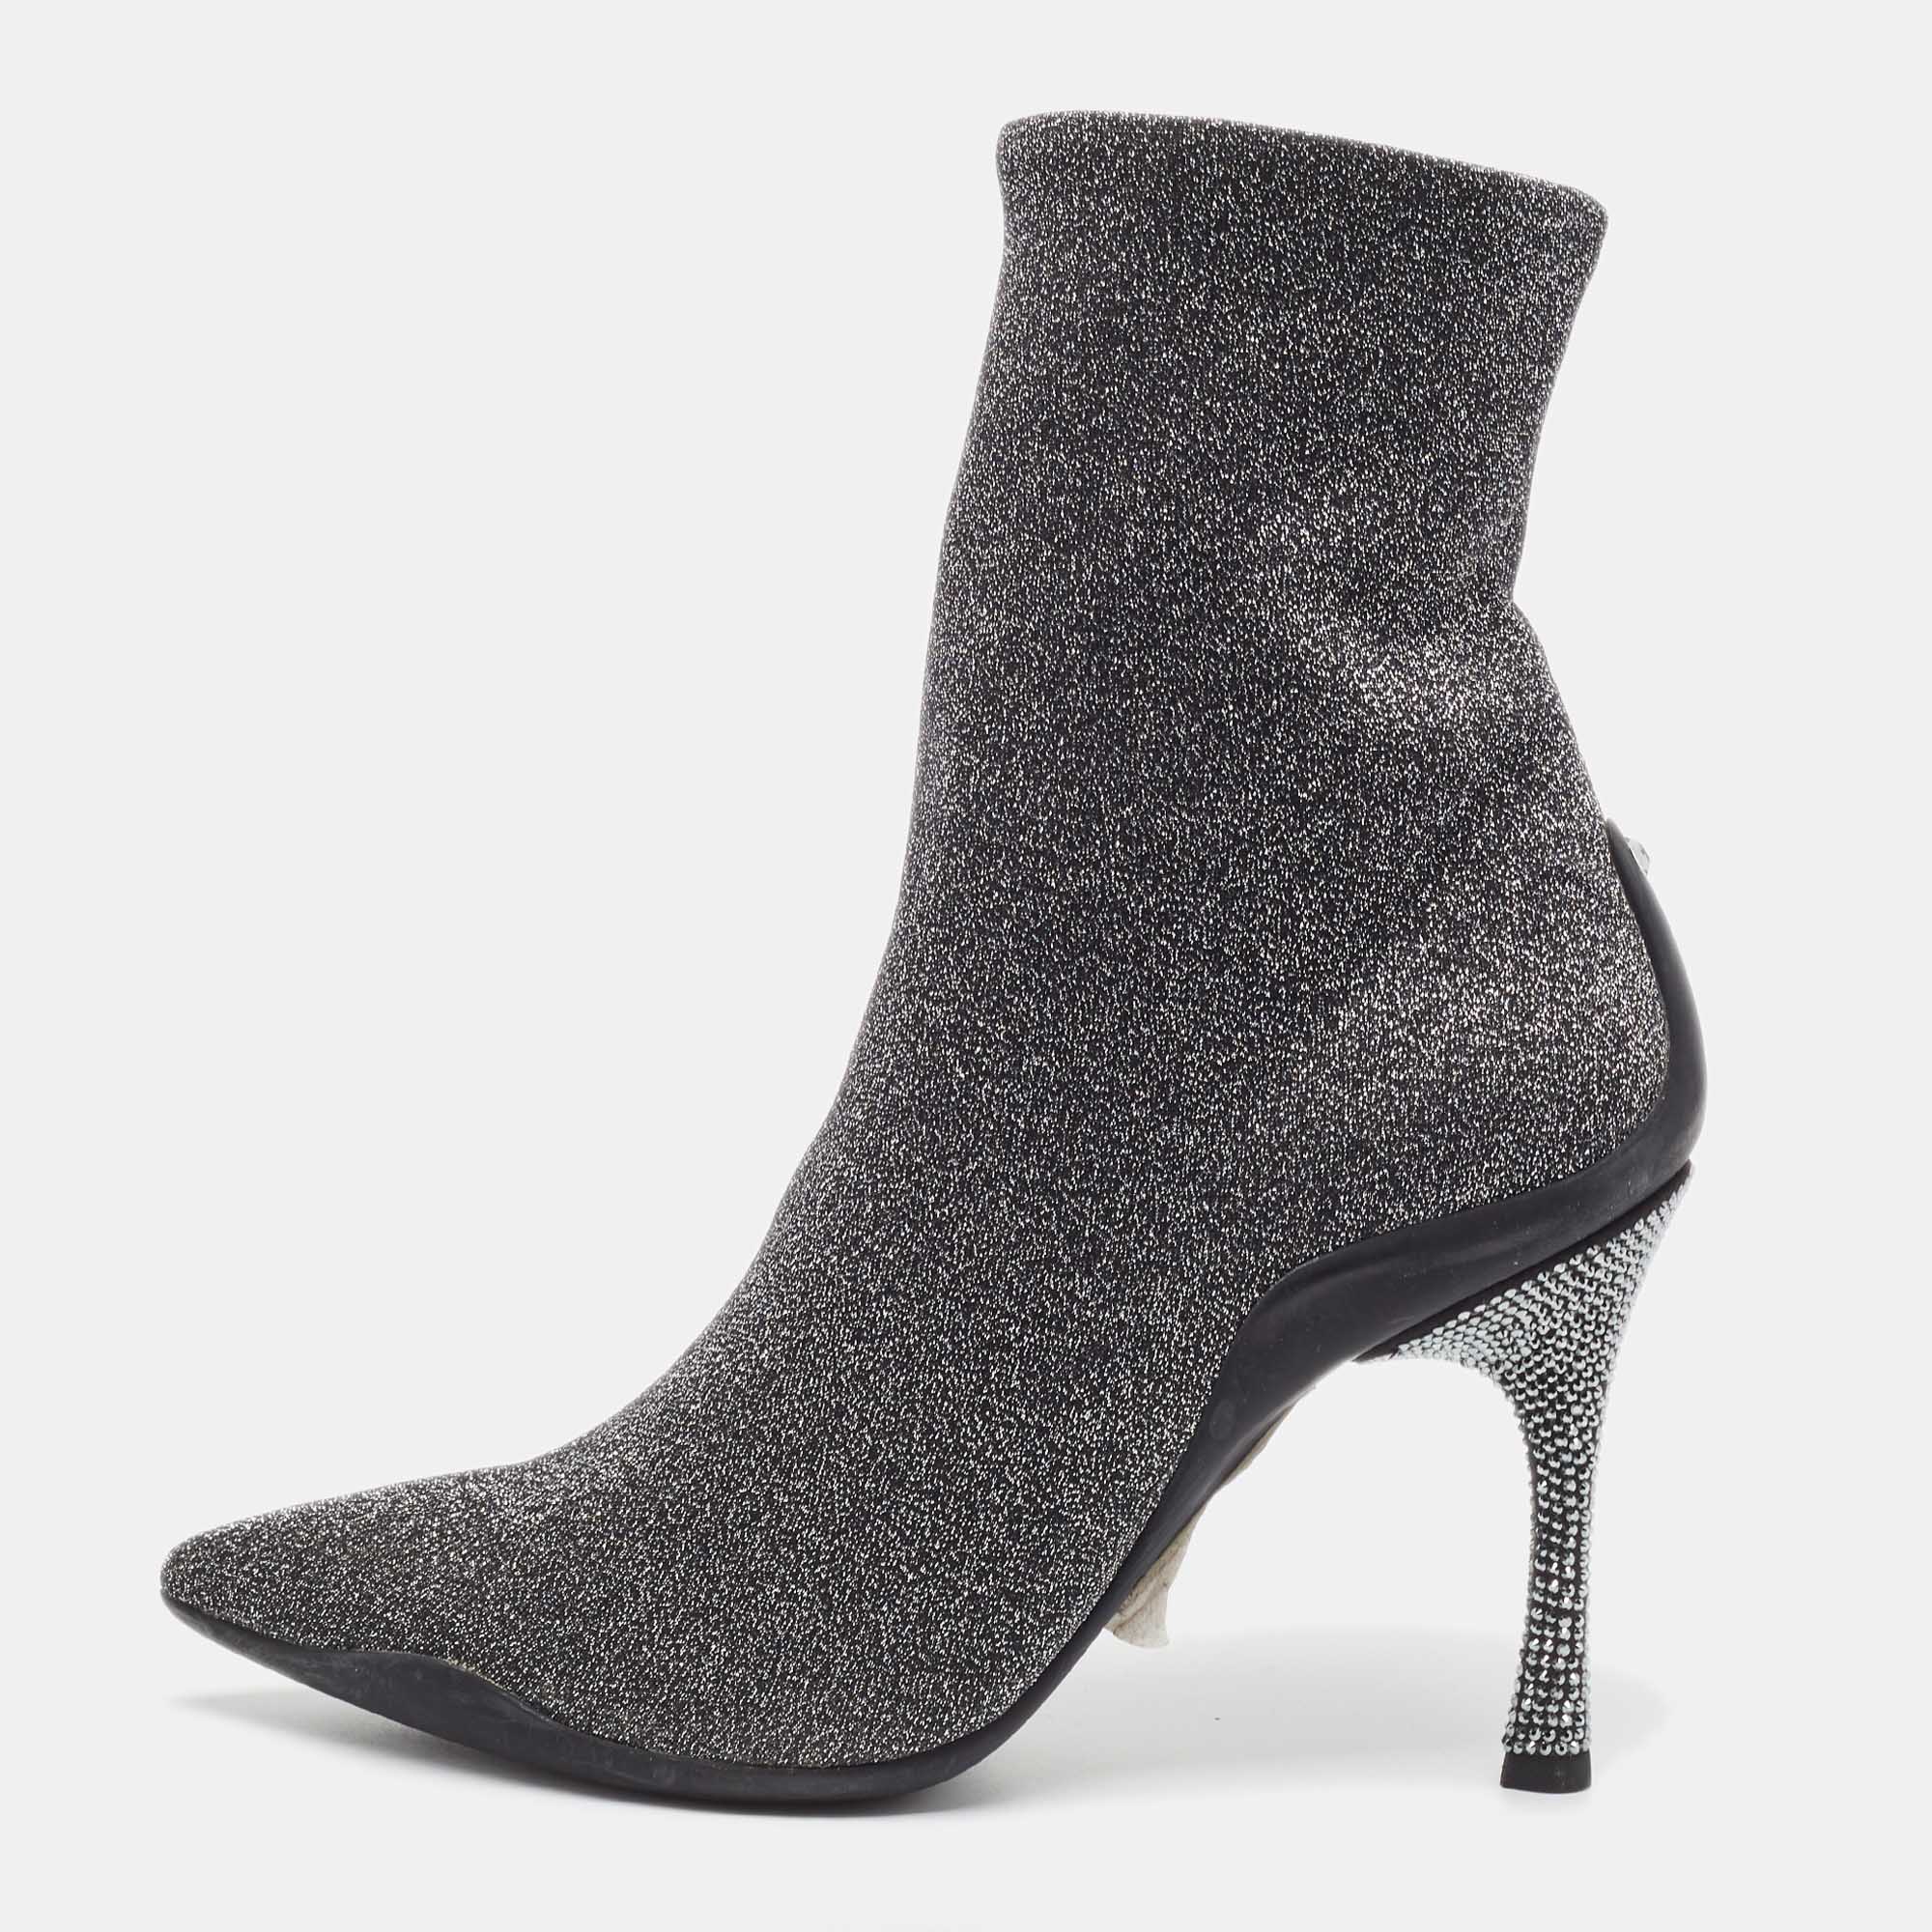 Rene caovilla silver glitter fabric ankle boots size 37